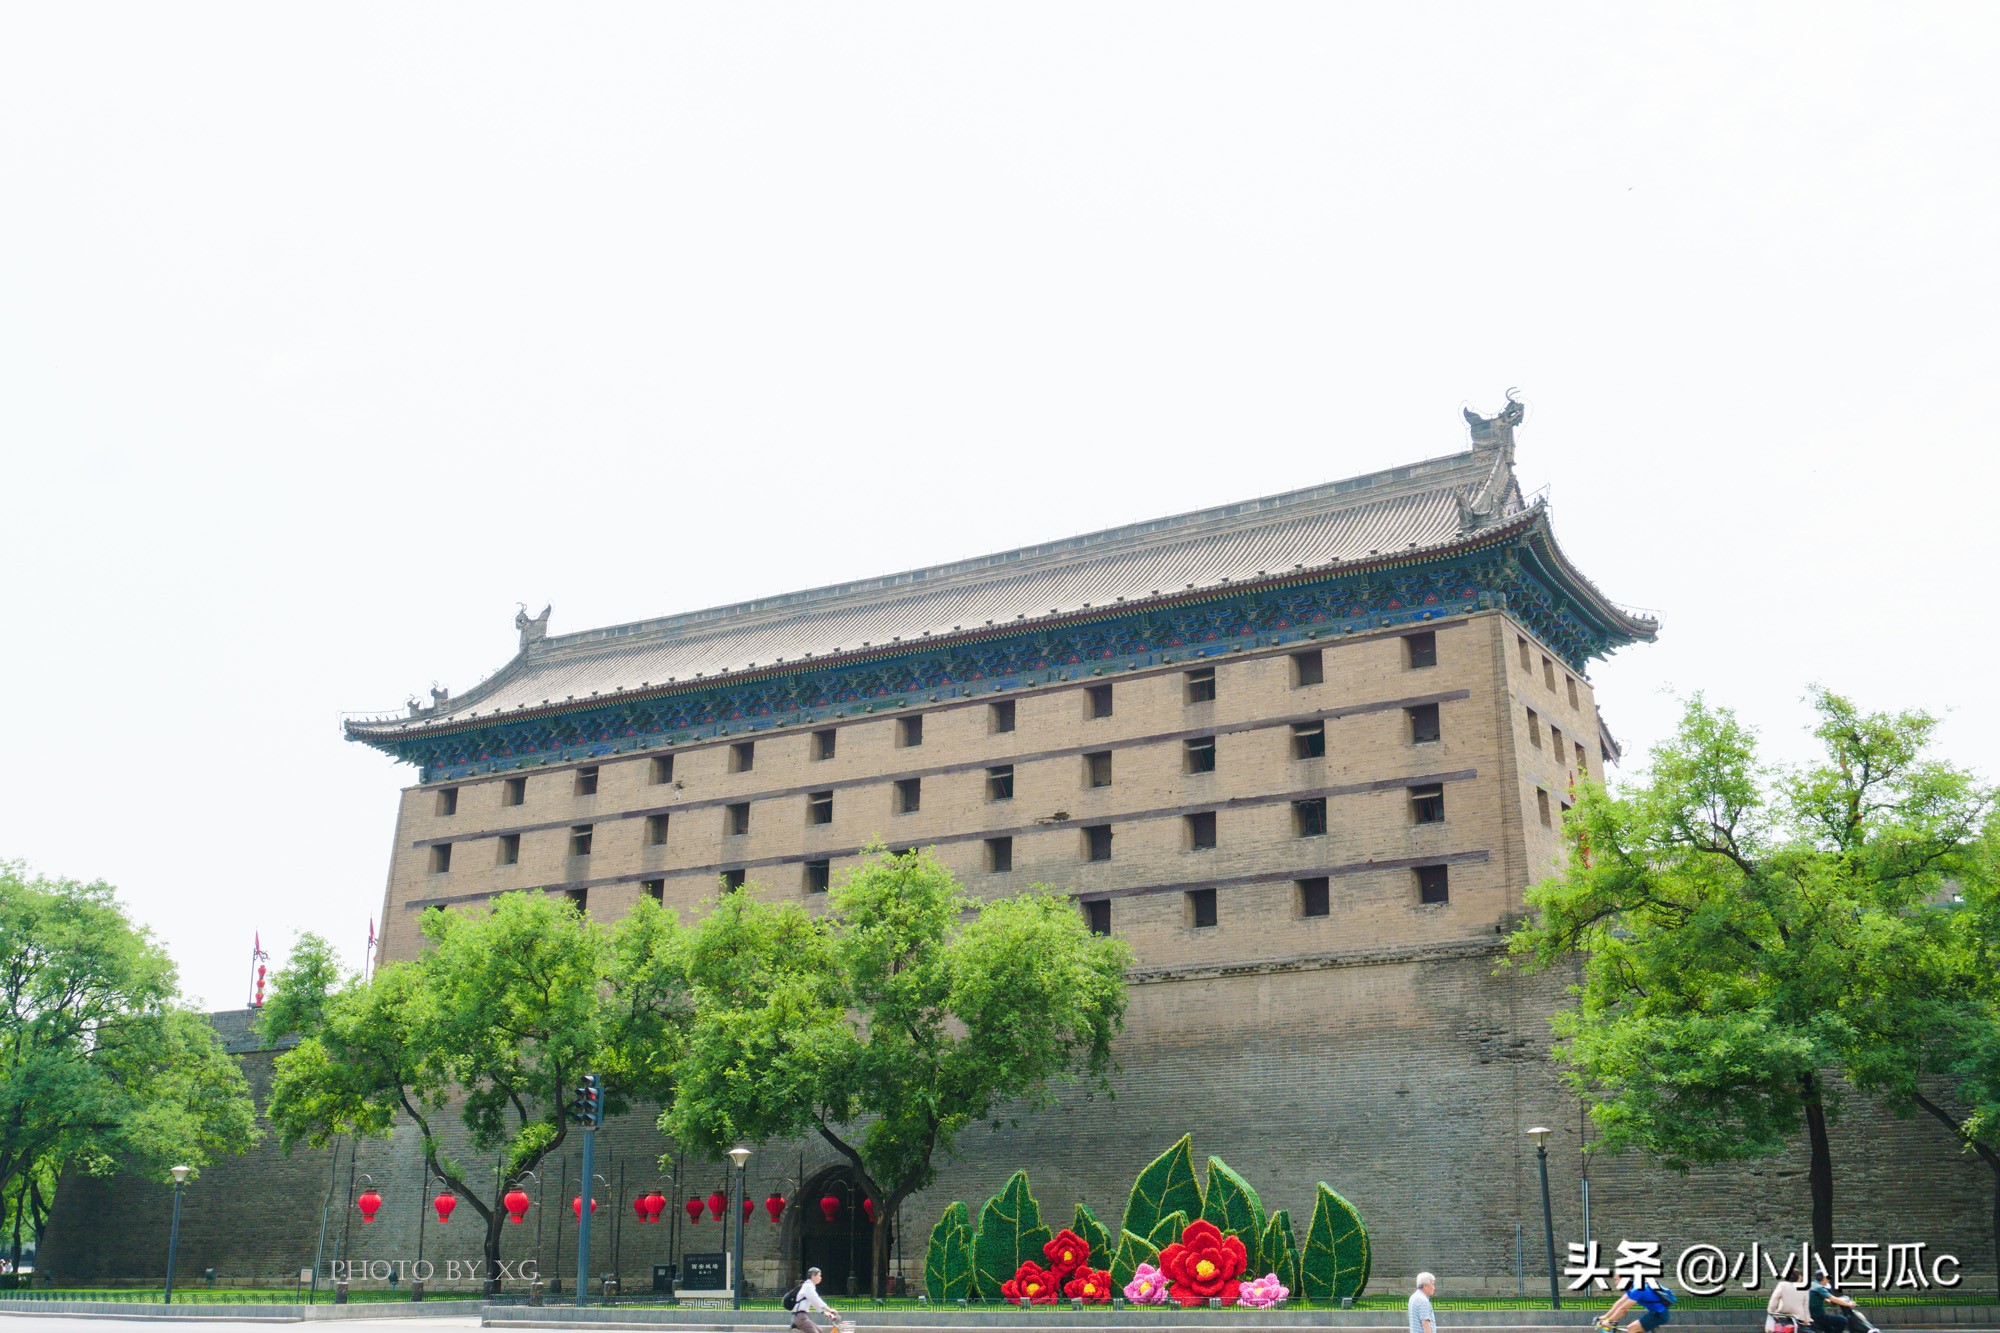 中国现存最完好的明代古城墙,距今有700年历史,却遭吐槽门票贵